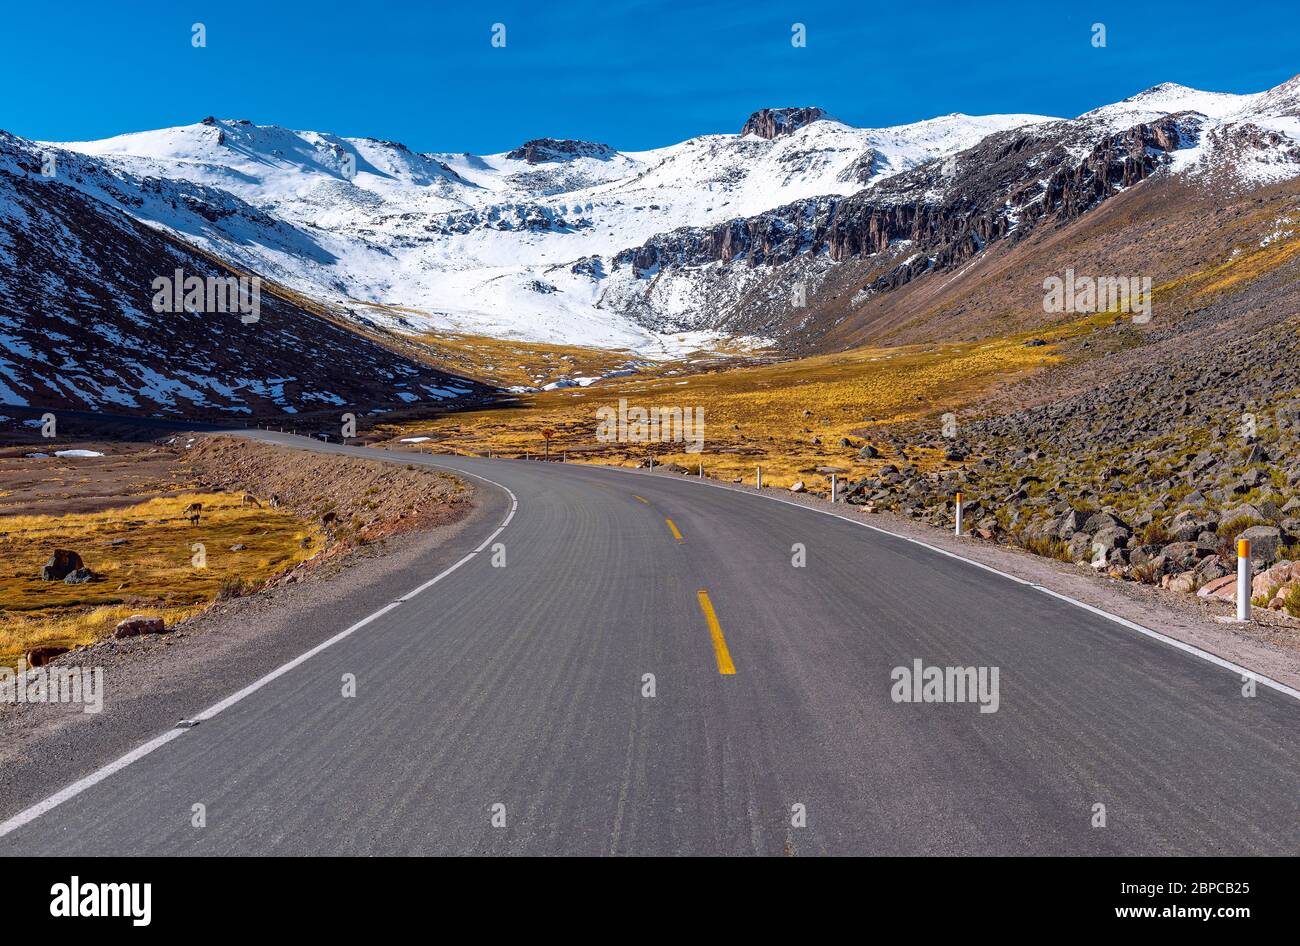 Auf der Straße innerhalb des Nationalreservats Salinas y Aguada Blanca mit Alpakas und Vicunas an der Straße, Anden Bergkette, Arequipa, Peru. Stockfoto